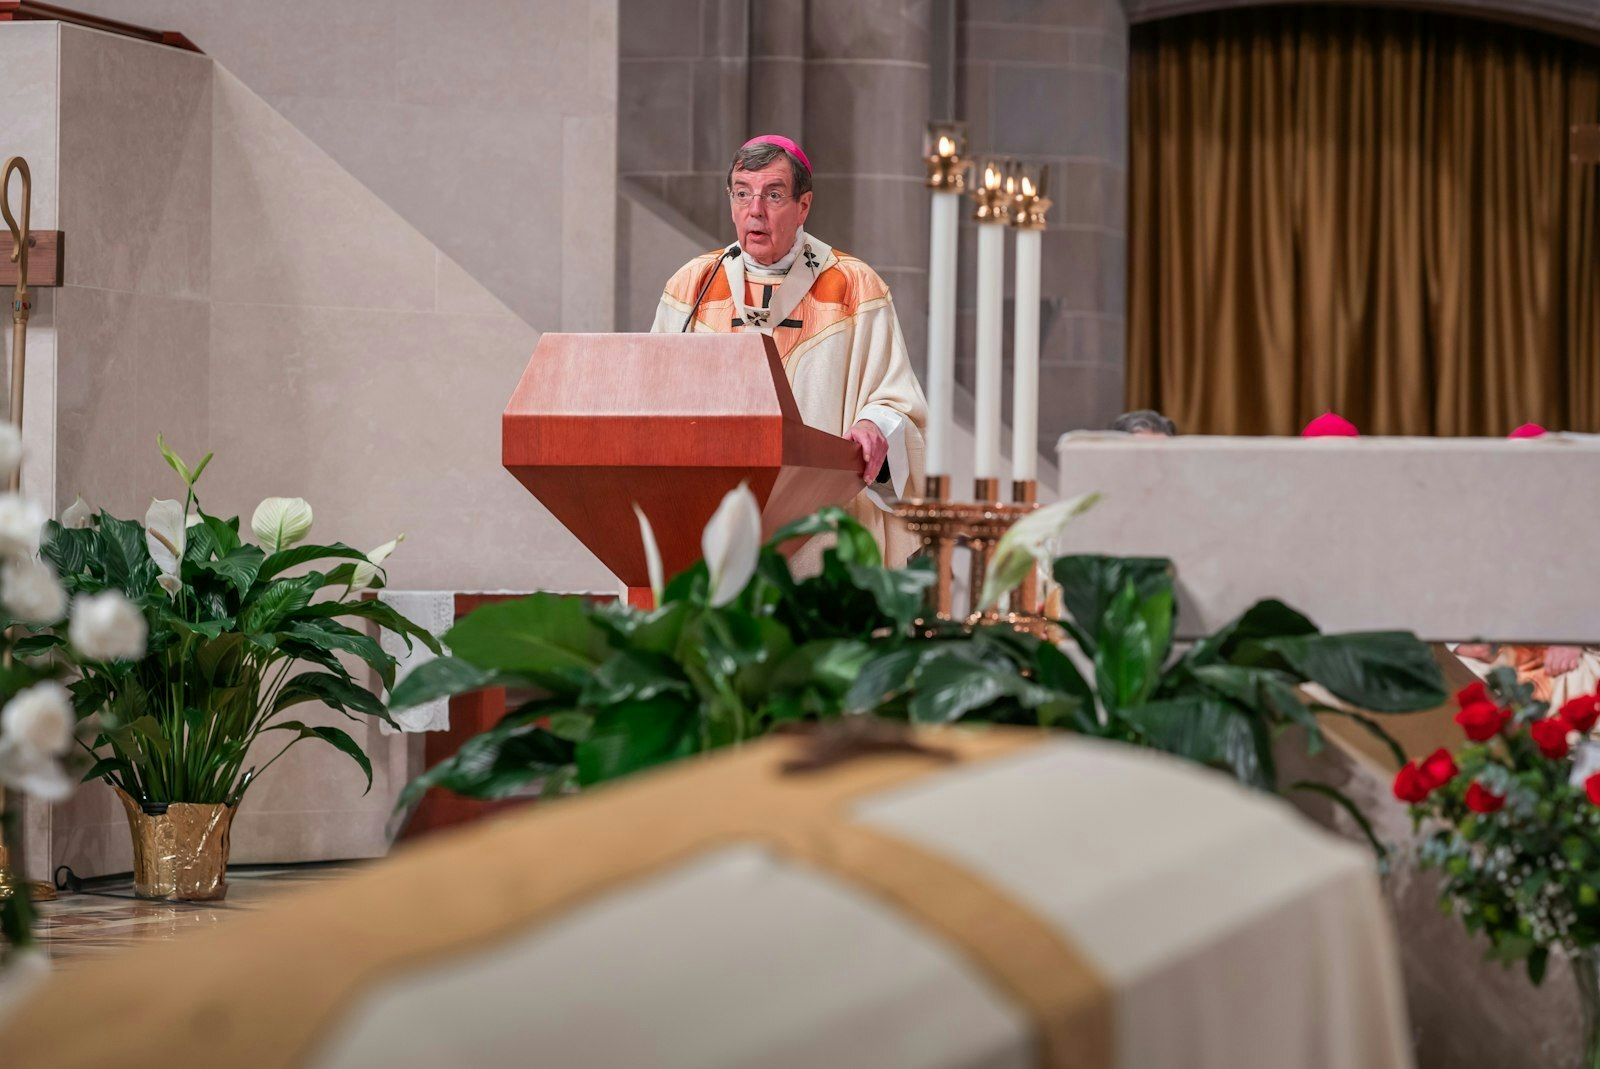 El Arzobispo de Detroit, Allen H. Vigneron, lee una carta de condolencia enviada por el Papa Francisco a través de su nuncio apostólico en Estados Unidos, el Cardenal Christophe Pierre.